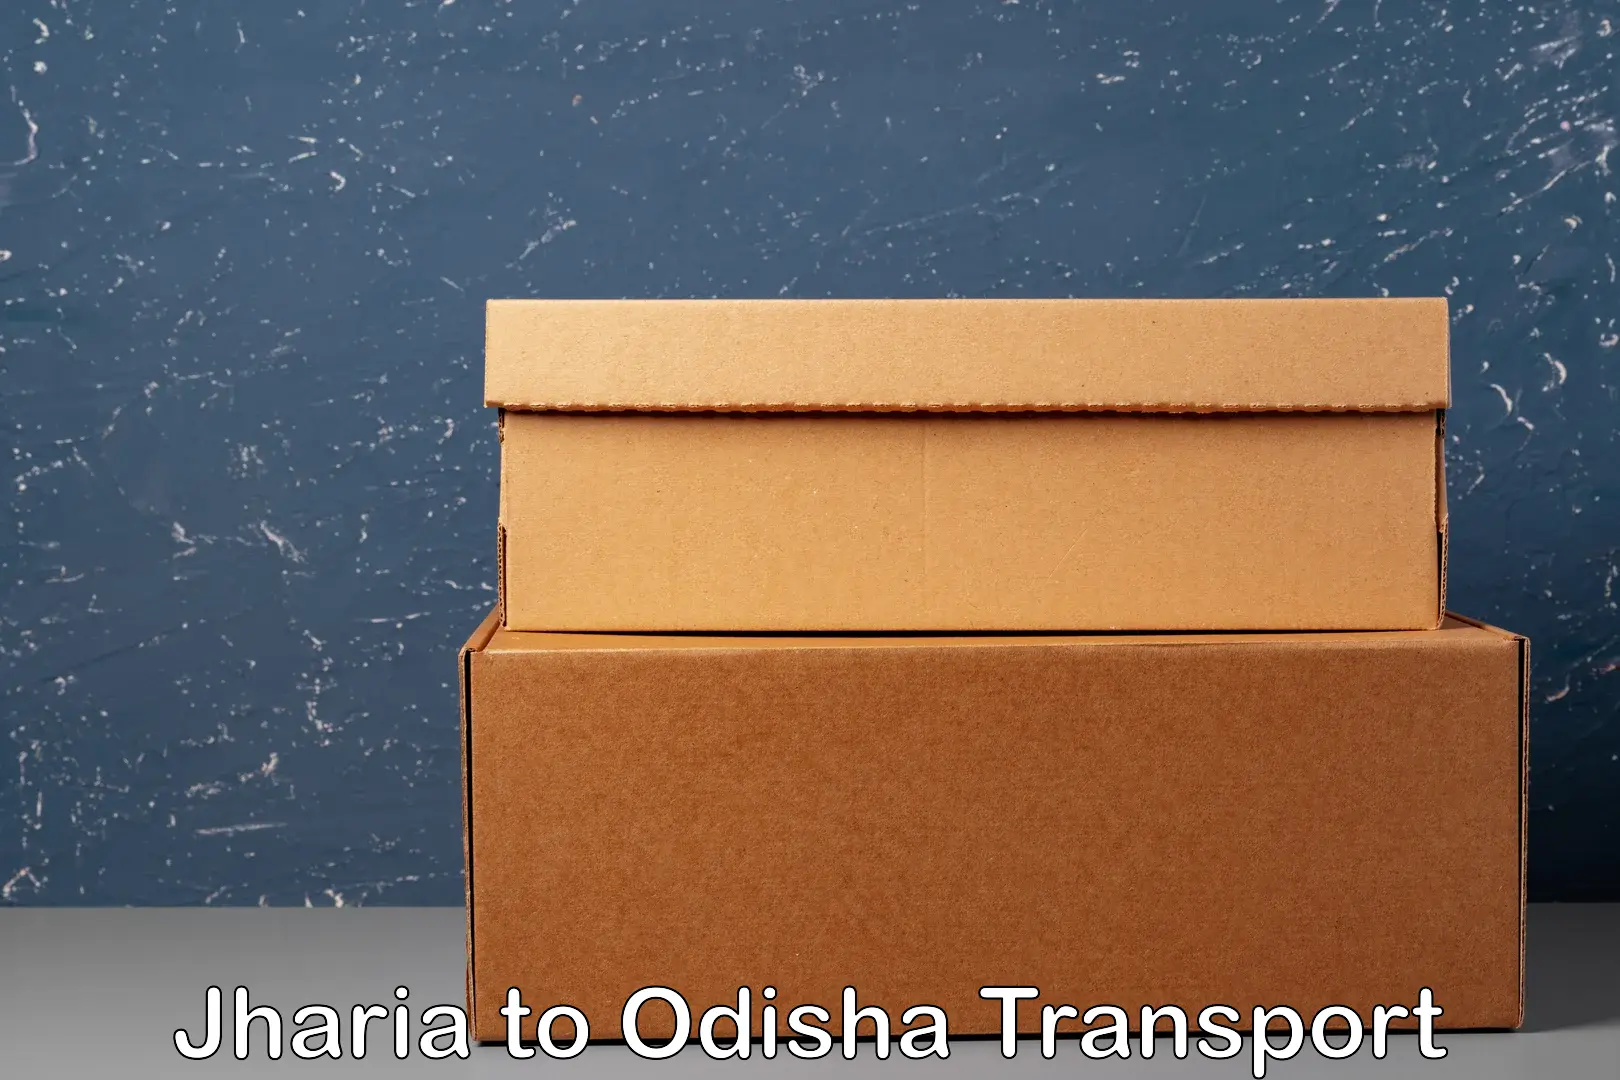 Cargo transport services Jharia to Morada